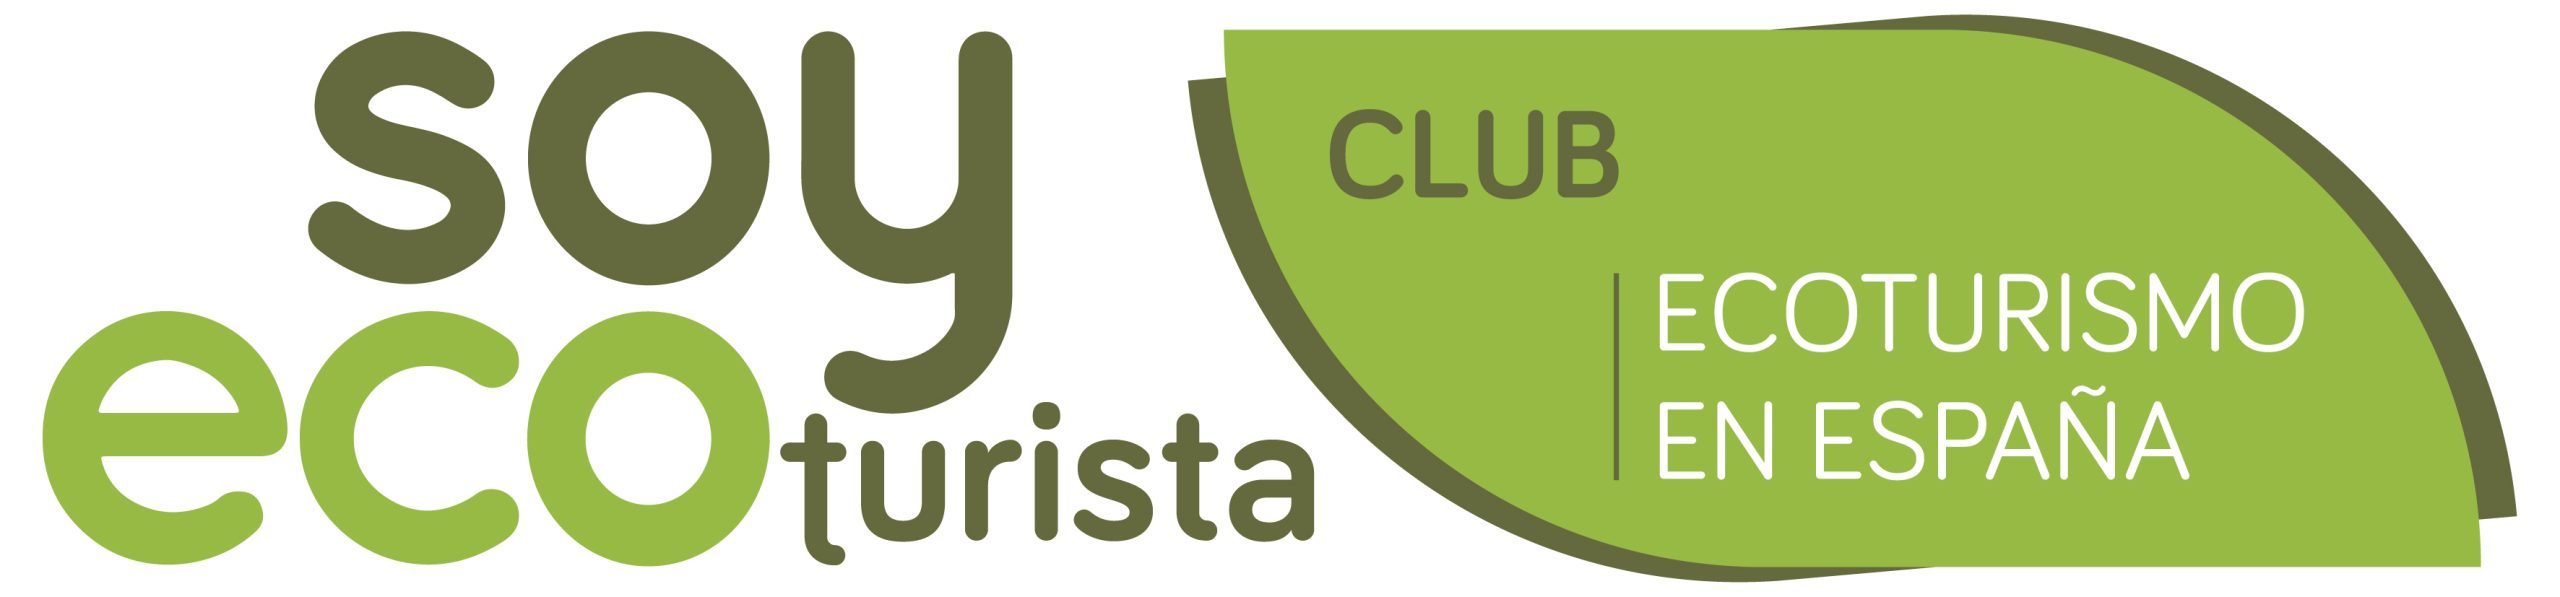 Empresa adherida al Club Ecoturismo en España